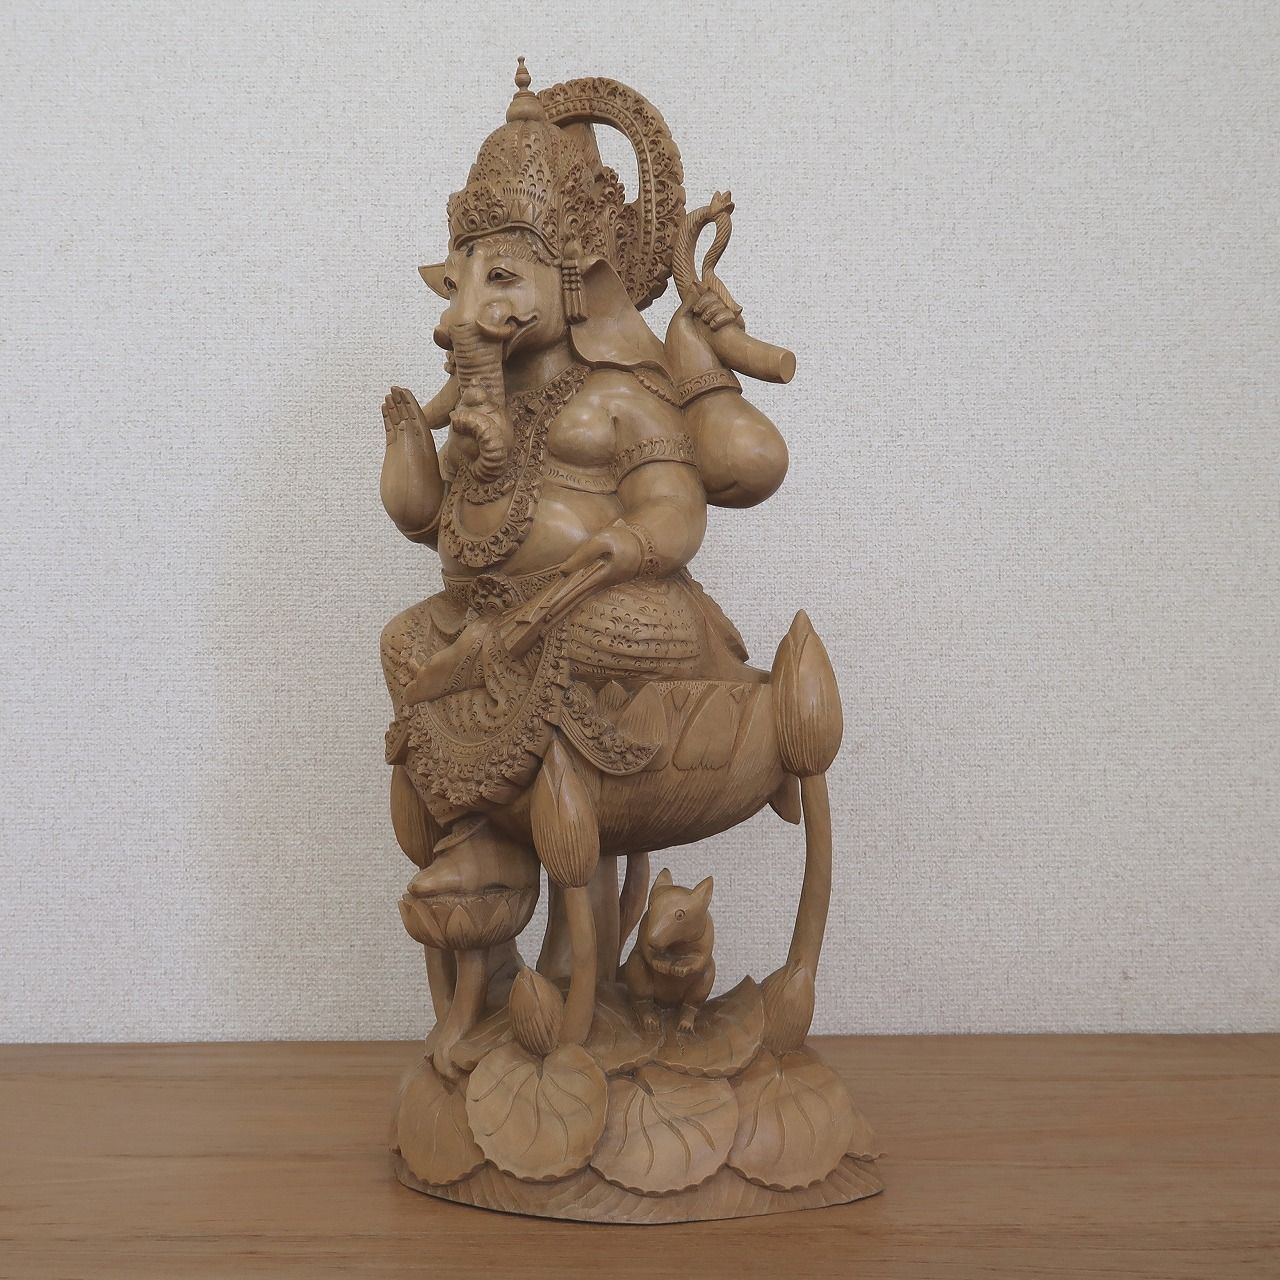 ガネーシャの木彫り 53cm クロコダイルウッド無垢材 アジアン雑貨 バリ 